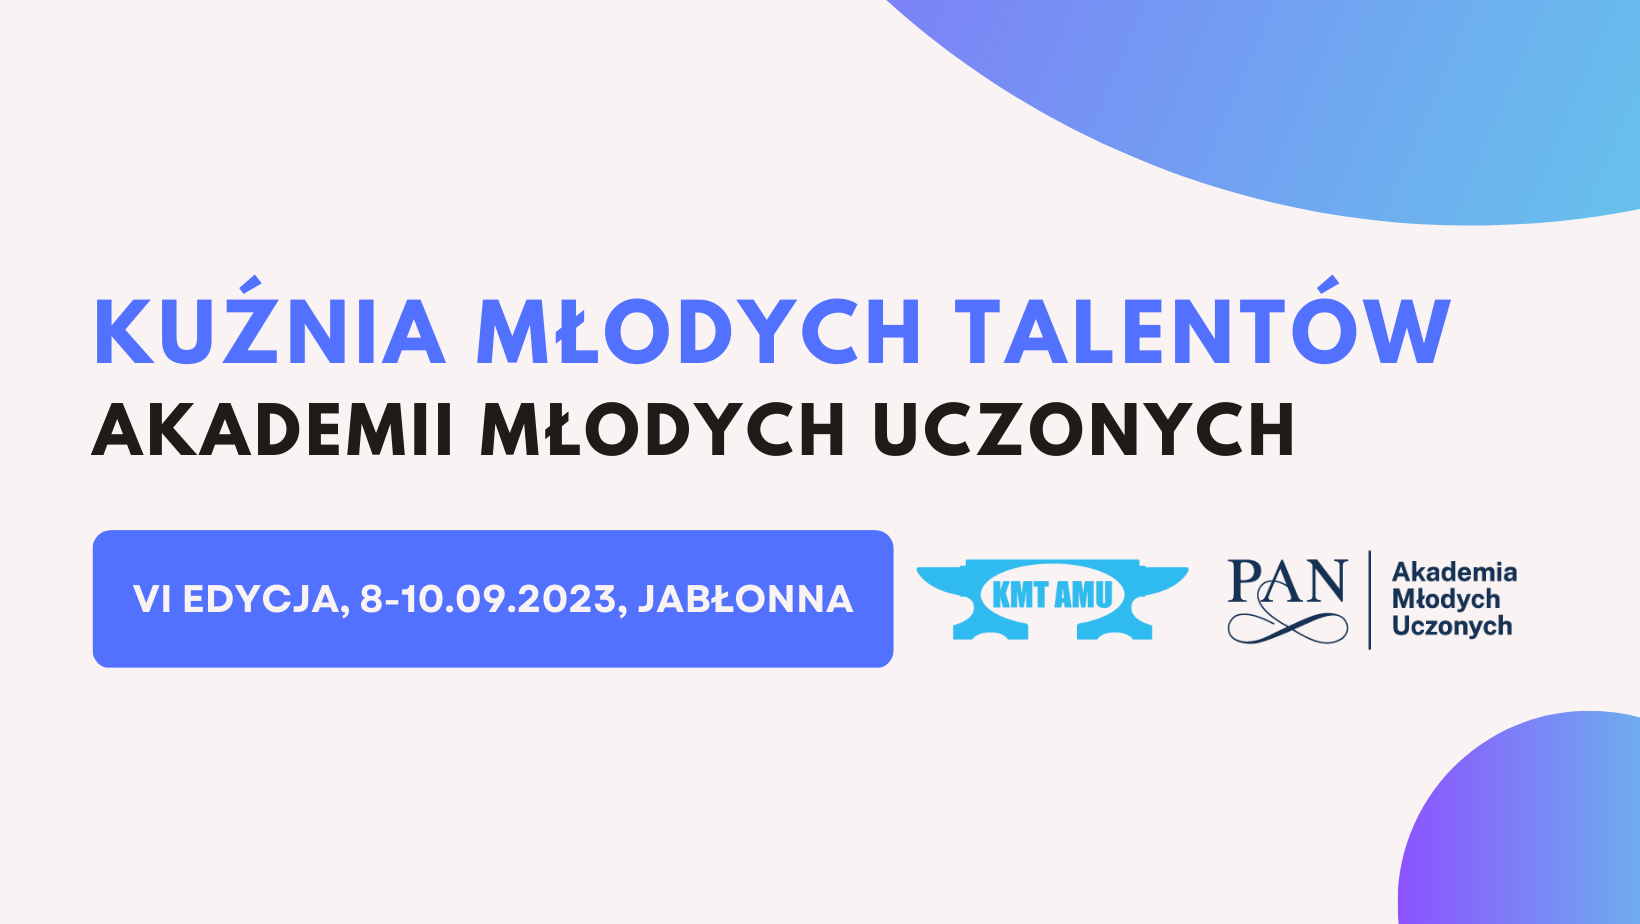 VI Edycja KMT (Kuźnia Młodych Talentów) 08 – 10 września 2023r. w Jabłonnie k. Warszawy